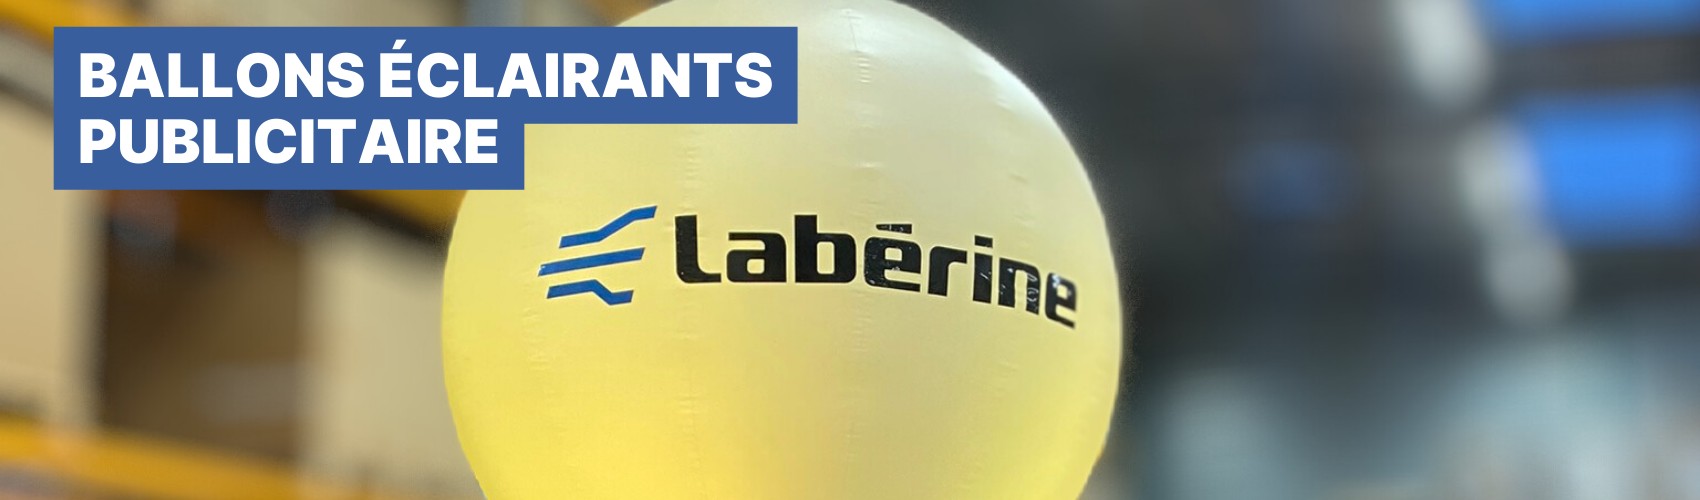 lluminez vos événements avec les ballons publicitaires Partymoon de Labérine